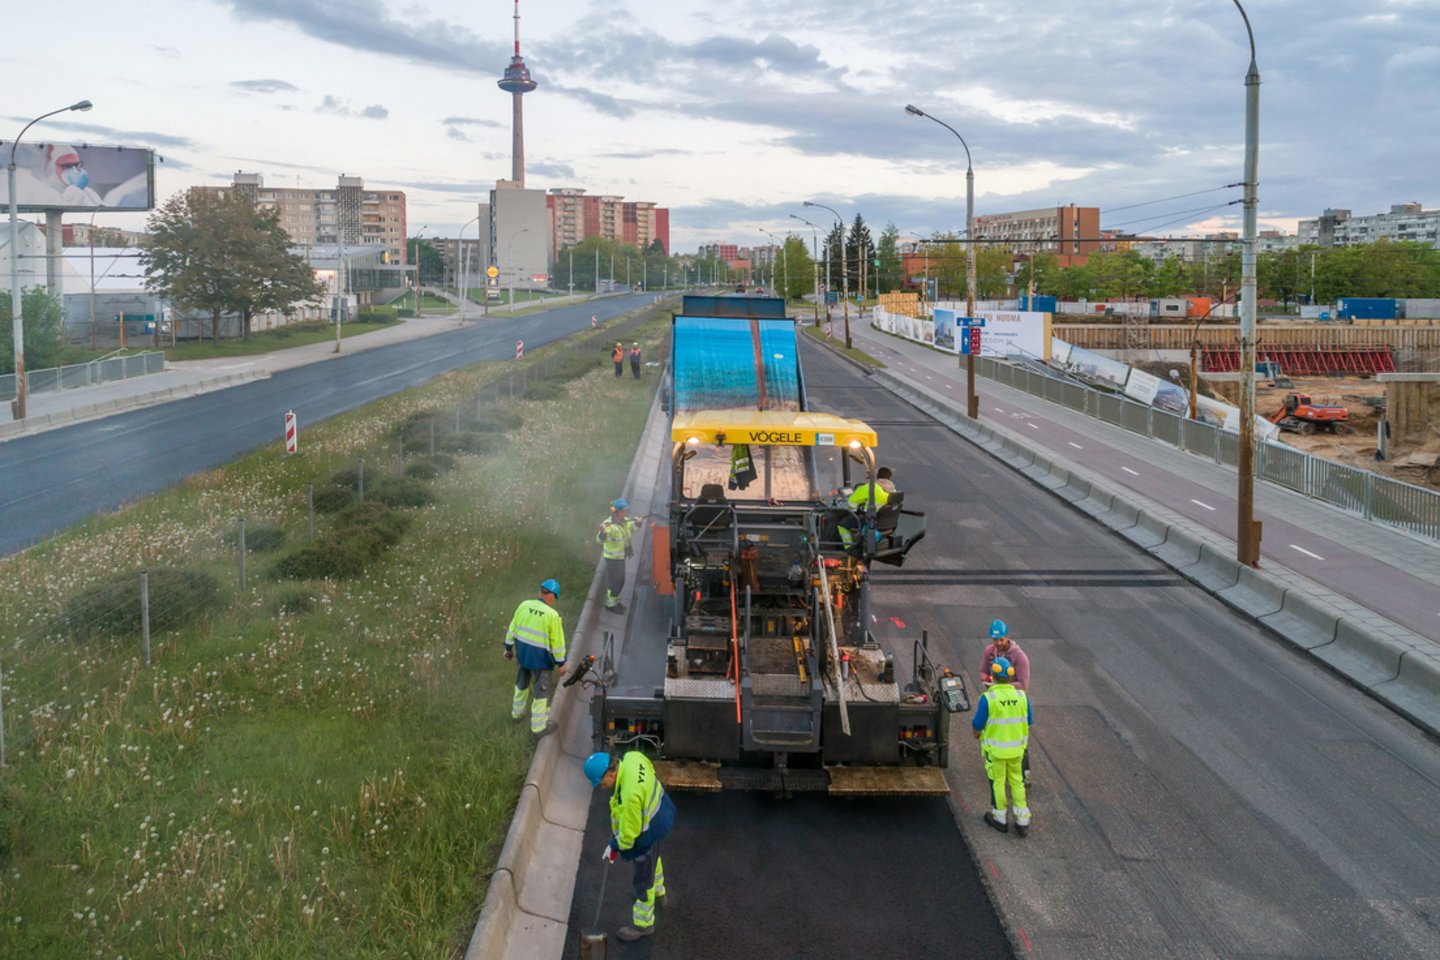 Beveik 1 km prospekto dalyje klojamas ištisinis asfaltas, jau pakeisti kelio bortai, nuotekų šuliniai, netrukus bus atnaujintas ir ženklinimas. <br>Pranešimo autorių nuotr.